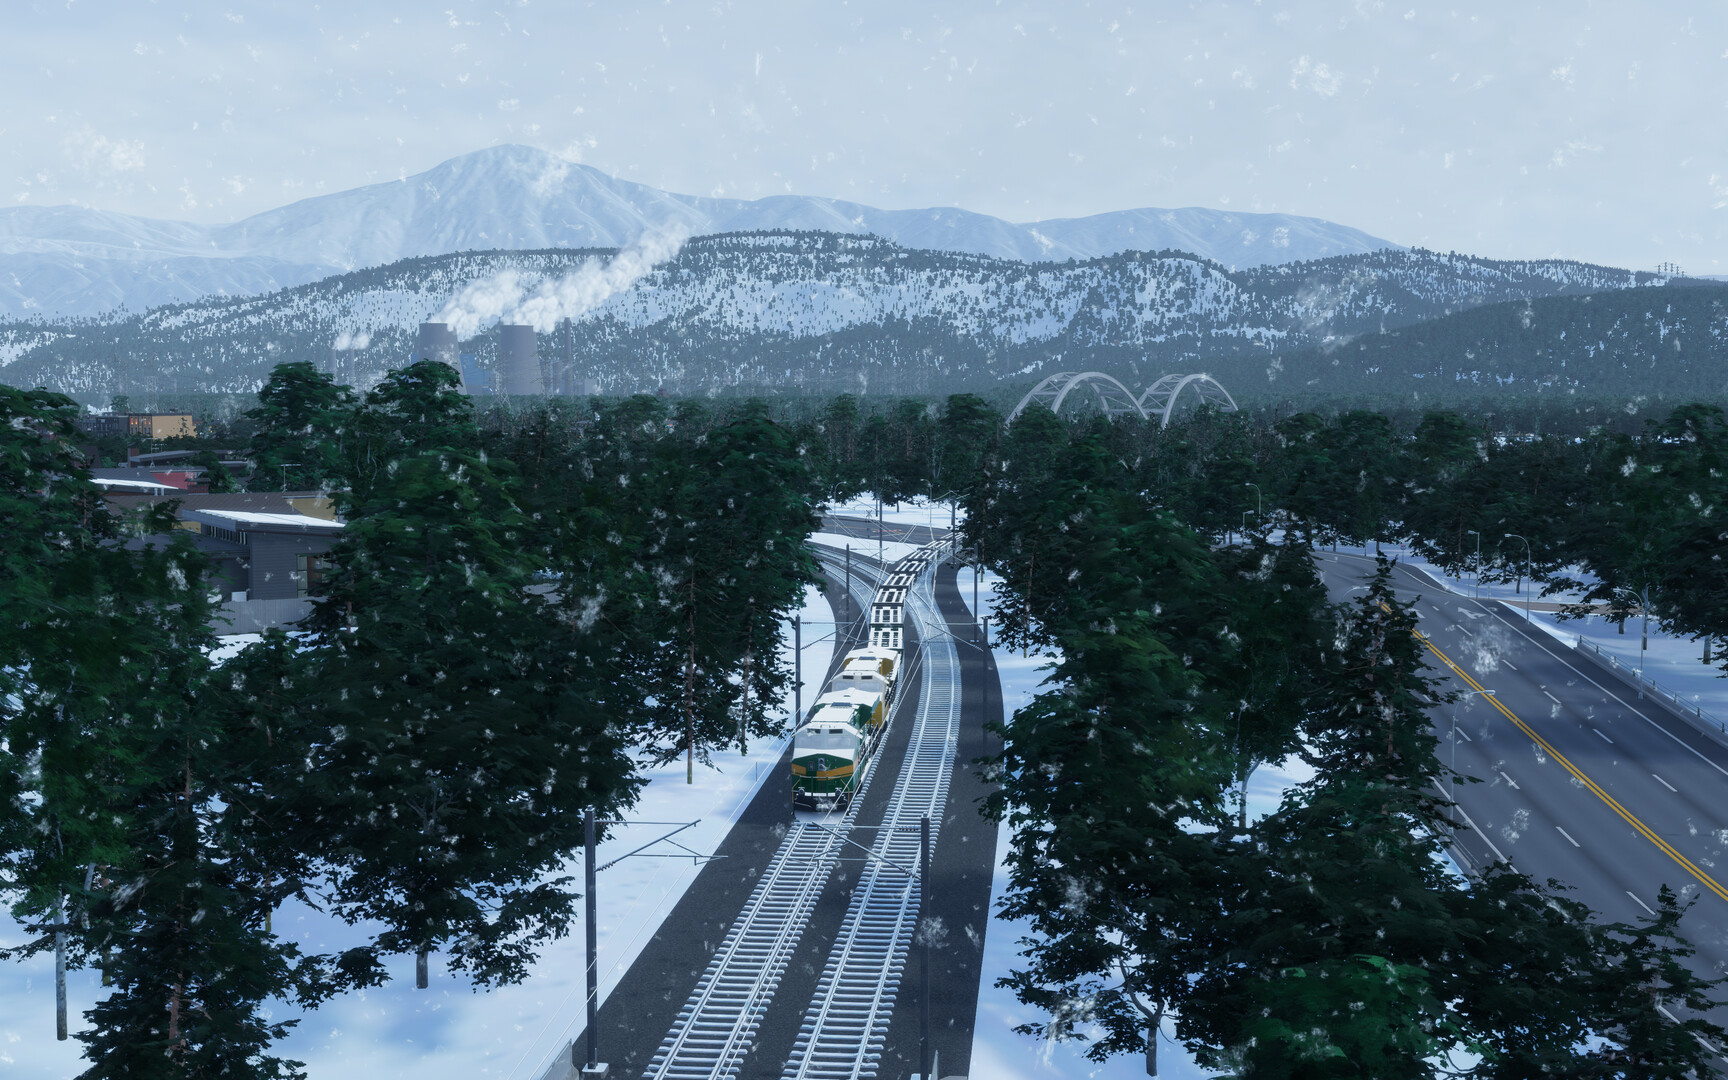 Snowing train